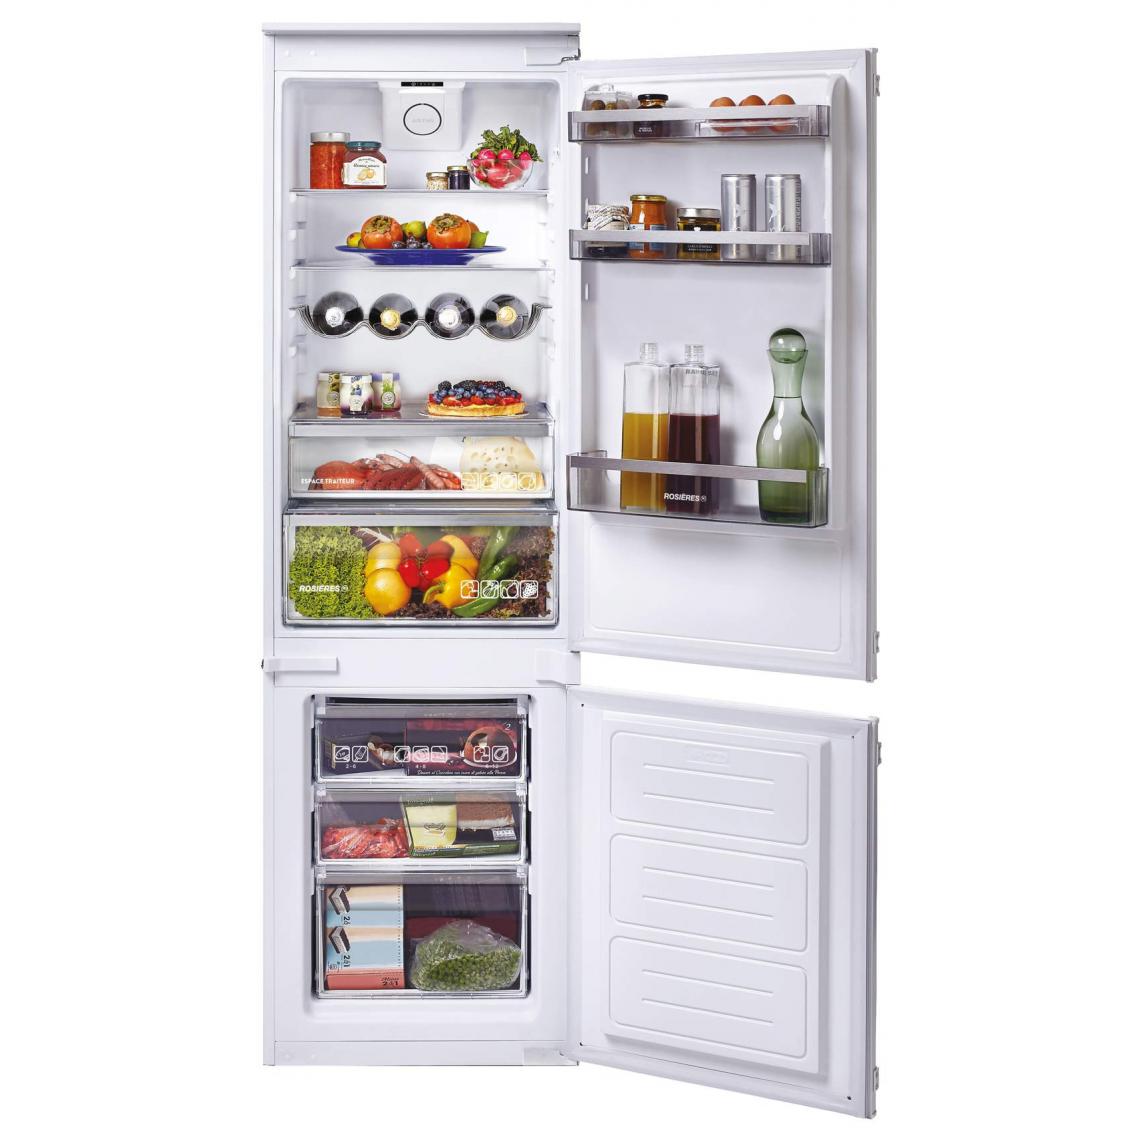 Rosieres - Refrigerateur Combiné encastrable - RBBS 100/N - 250 L (190 + 60) - Froid Brassé - A+ - L 57 cm x H 184 cm - Réfrigérateur